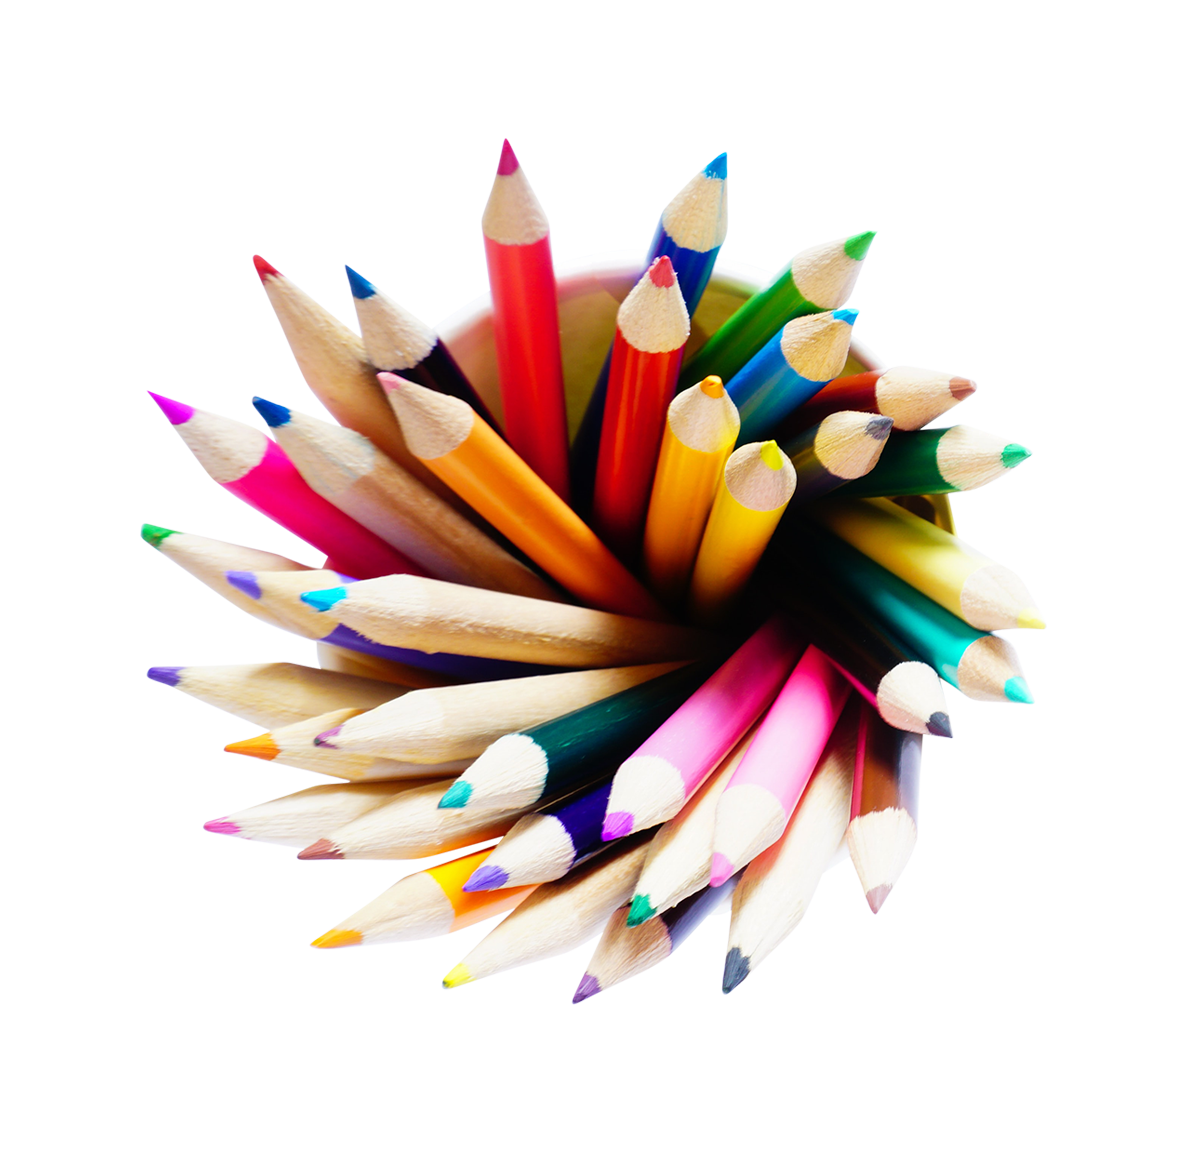 pencil colors PNG image, transparent pencil colors png, pencil colors png hd images download